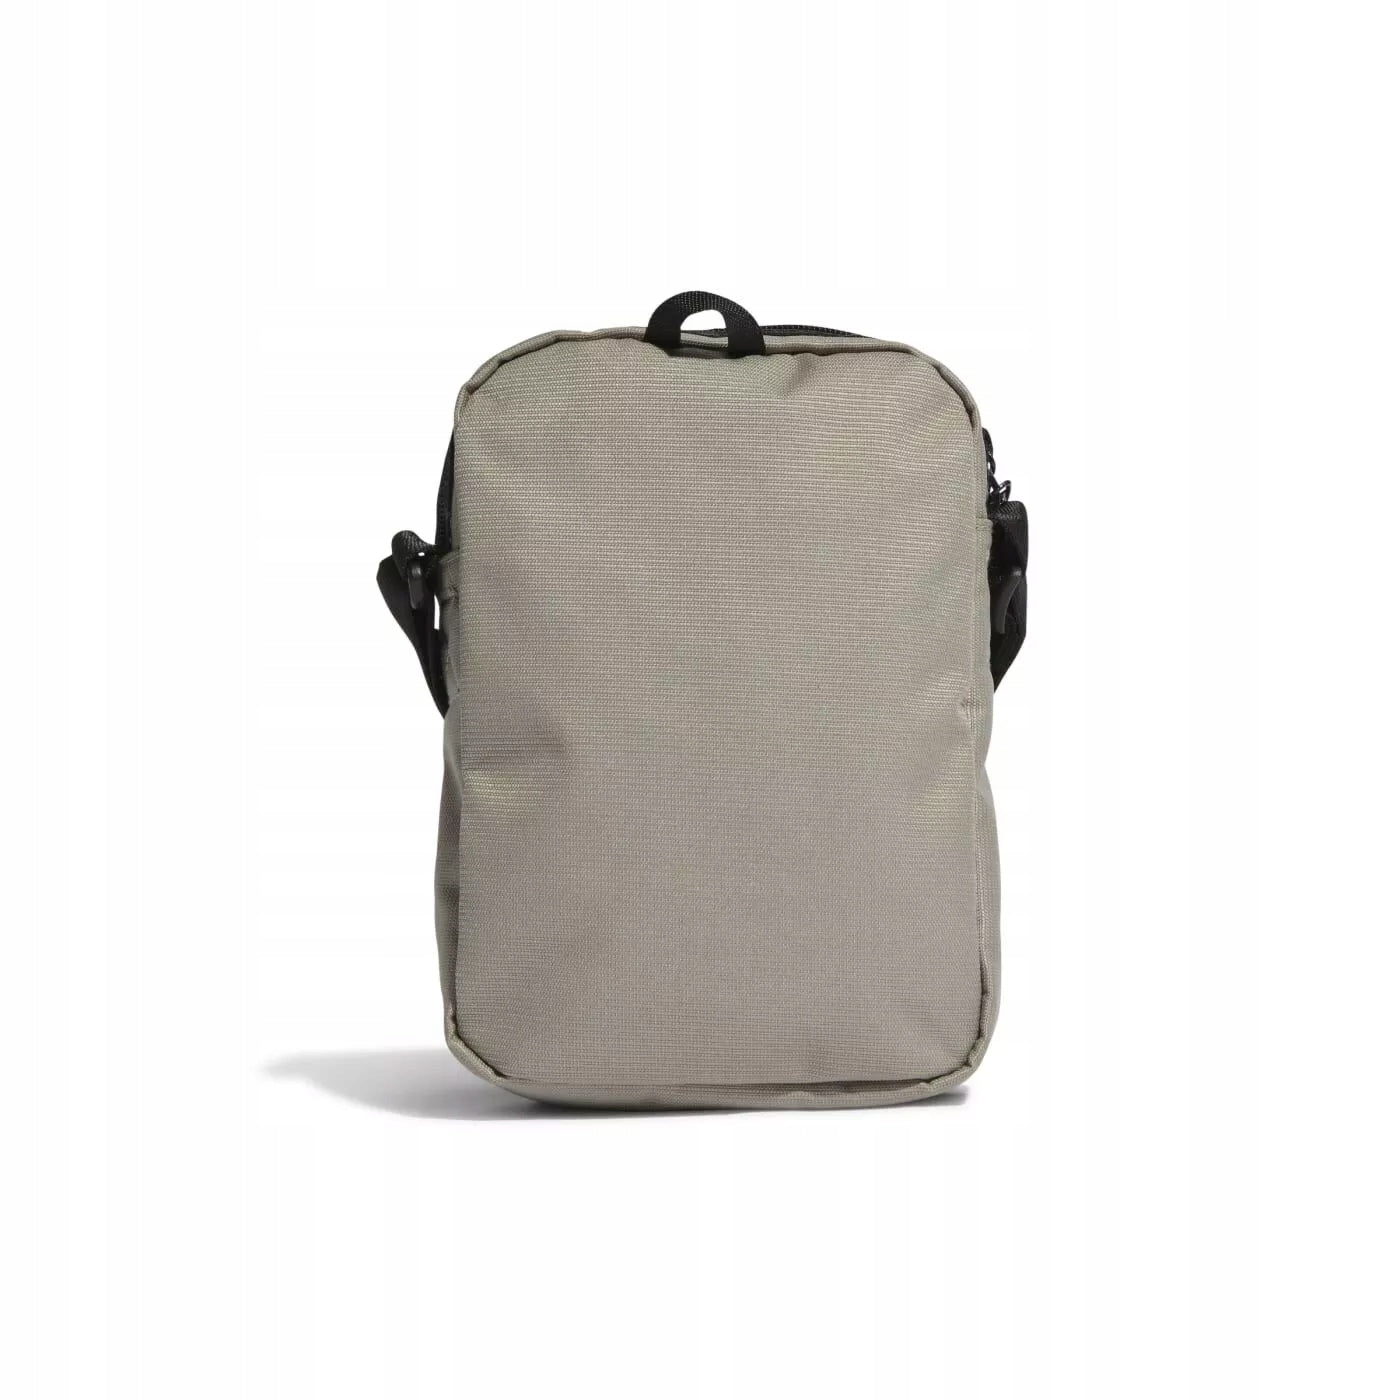 Adidas Shoulder Bag - Beige/Orange